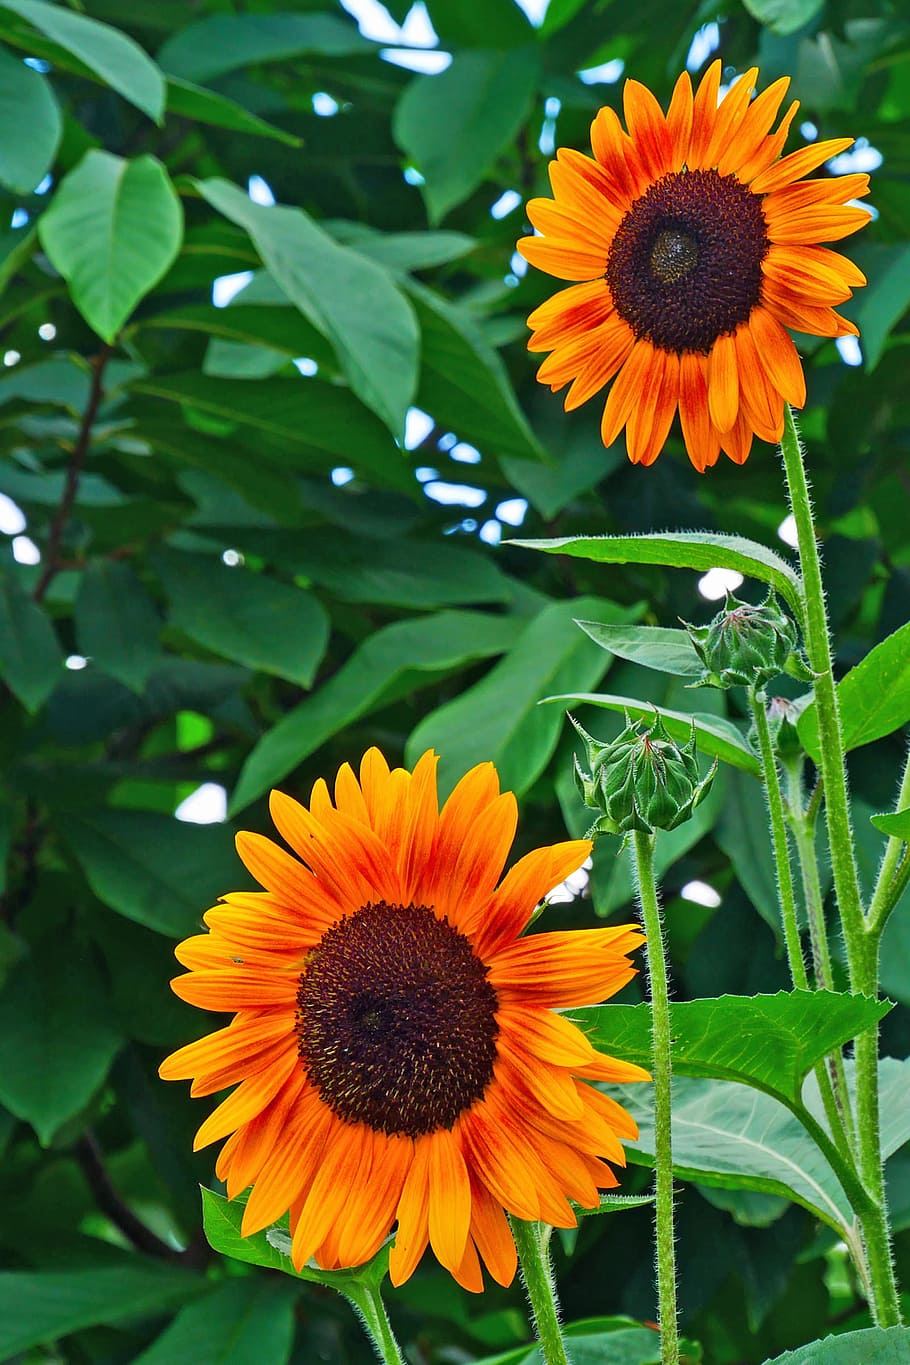 gambar, bunga matahari, -, tanaman, menarik, lebah., helianthus, bunga matahari biasa, bunga asli, tanaman semusim